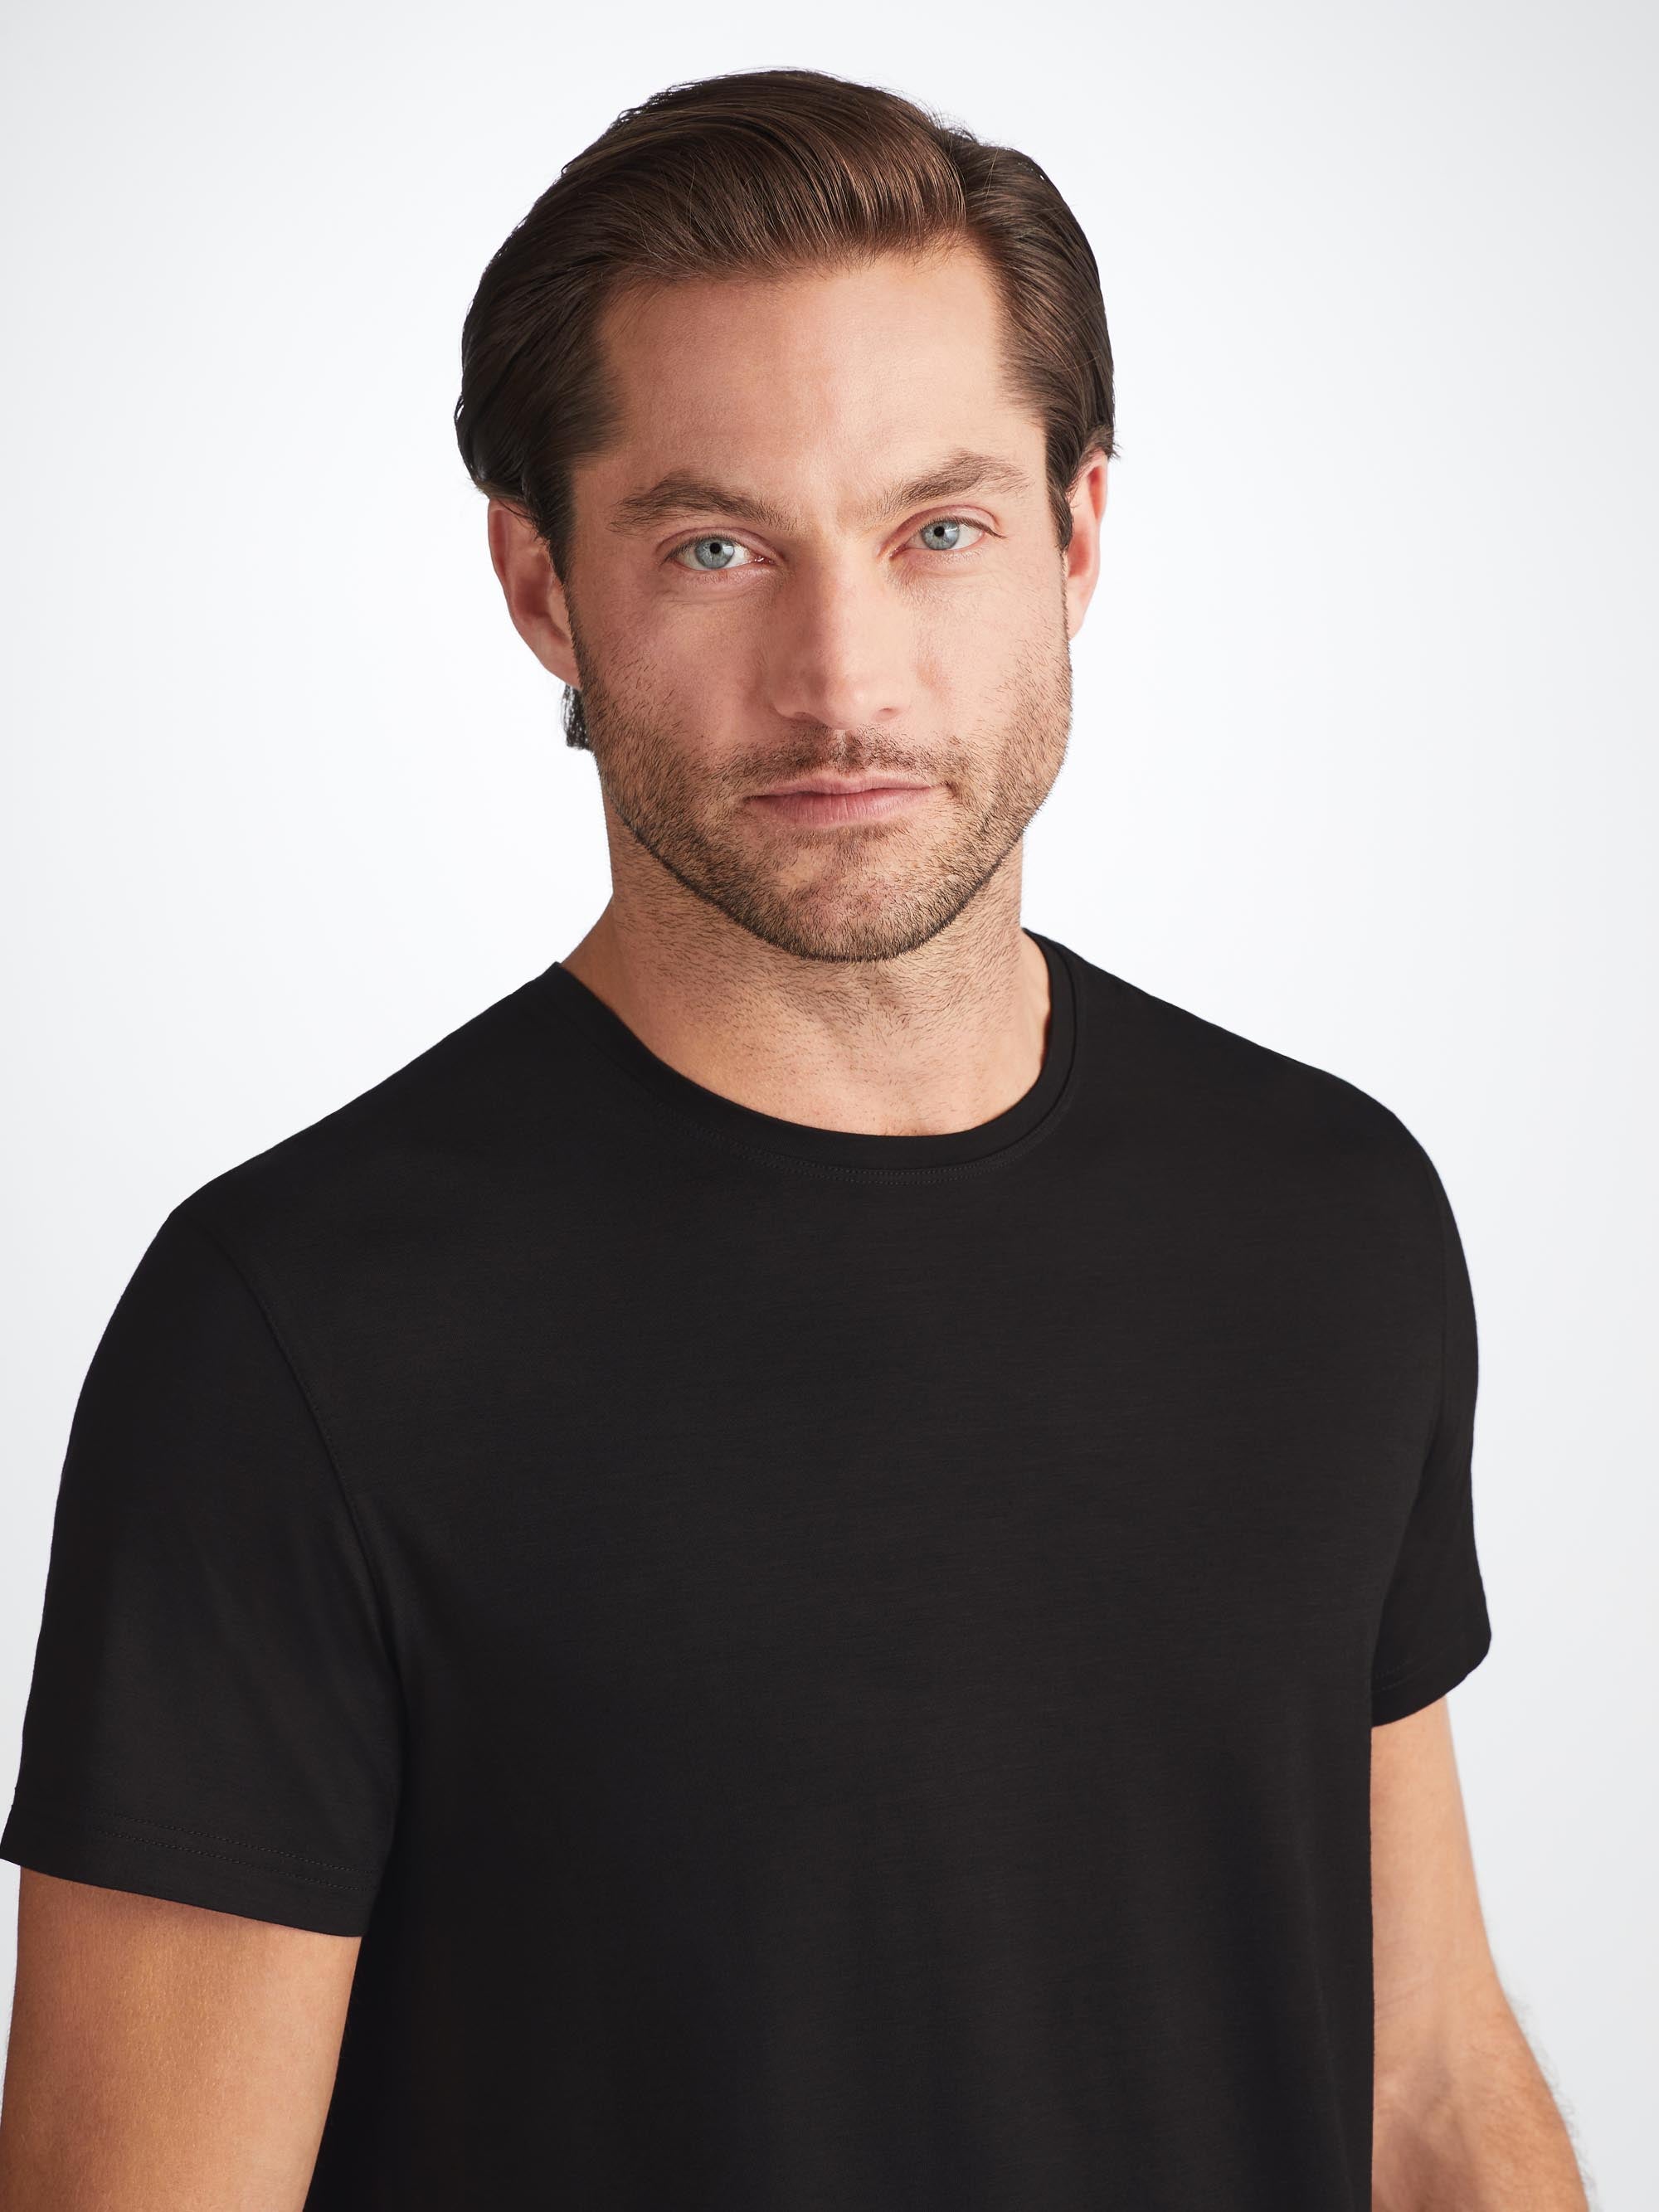 Men's T-Shirt Basel Micro Modal Stretch Black